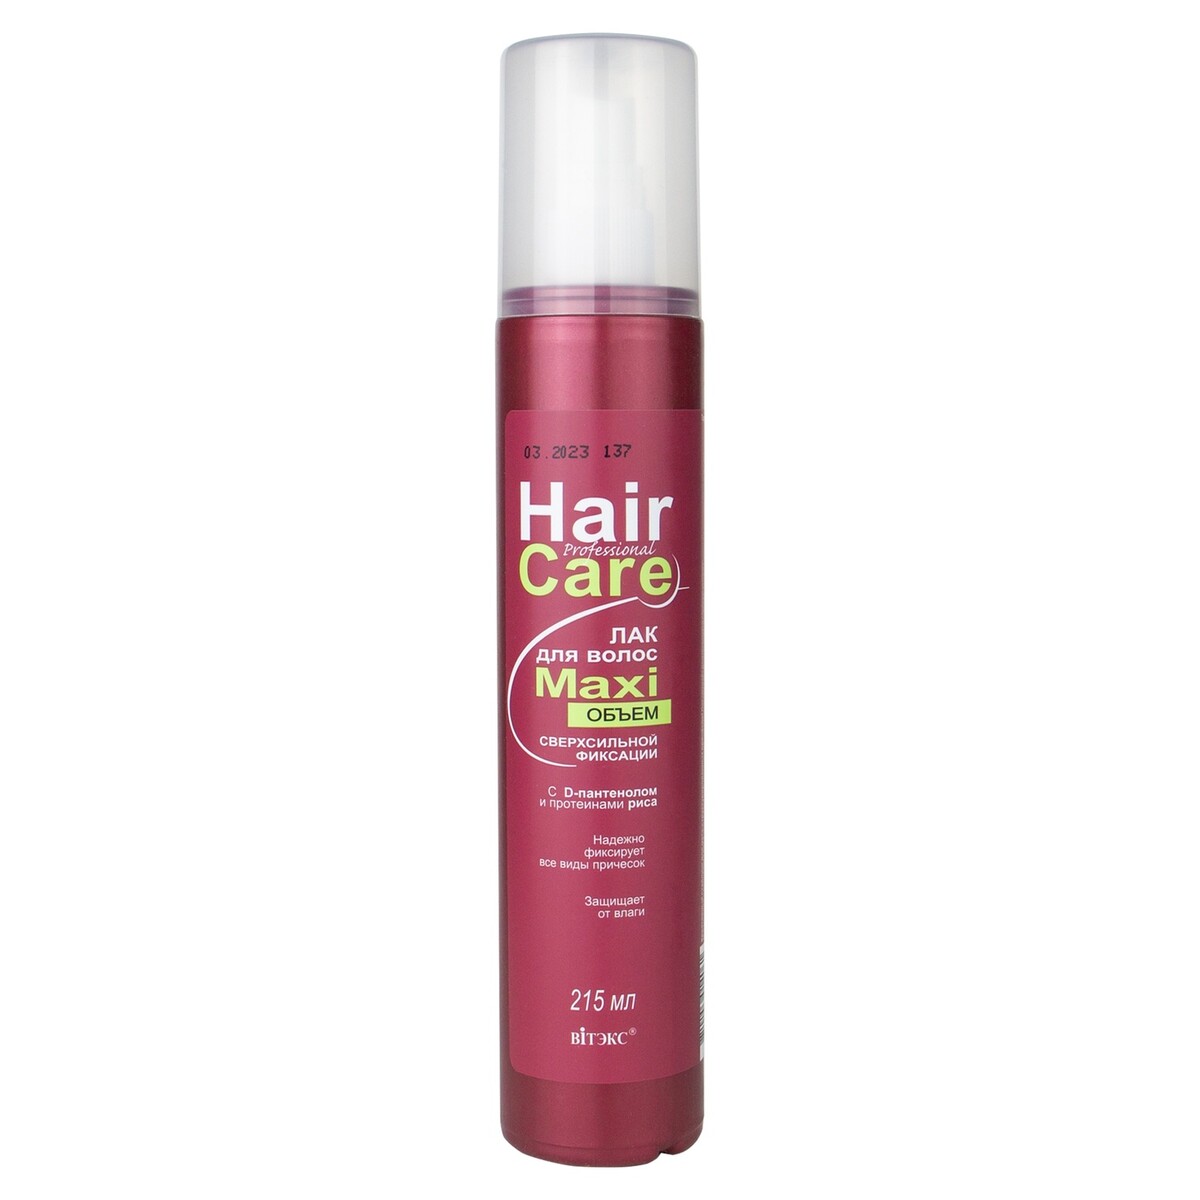    hair care maxi 